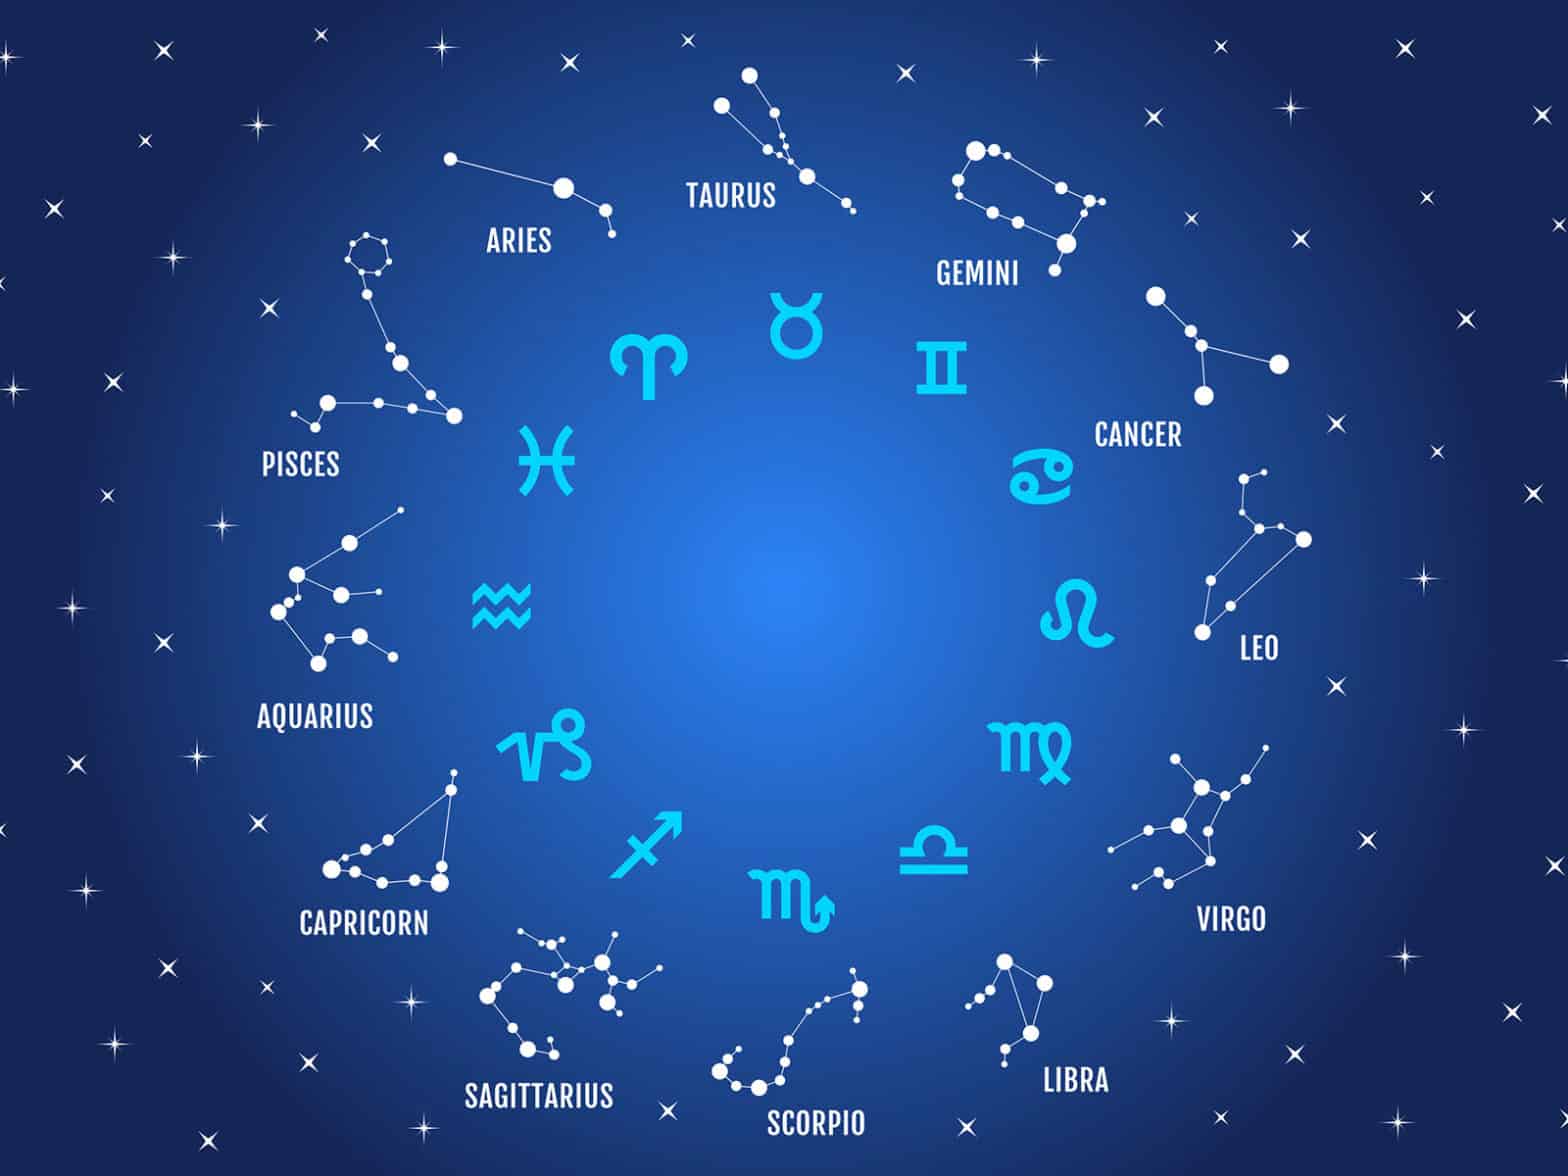 On dénombre 12 signes astrologiques